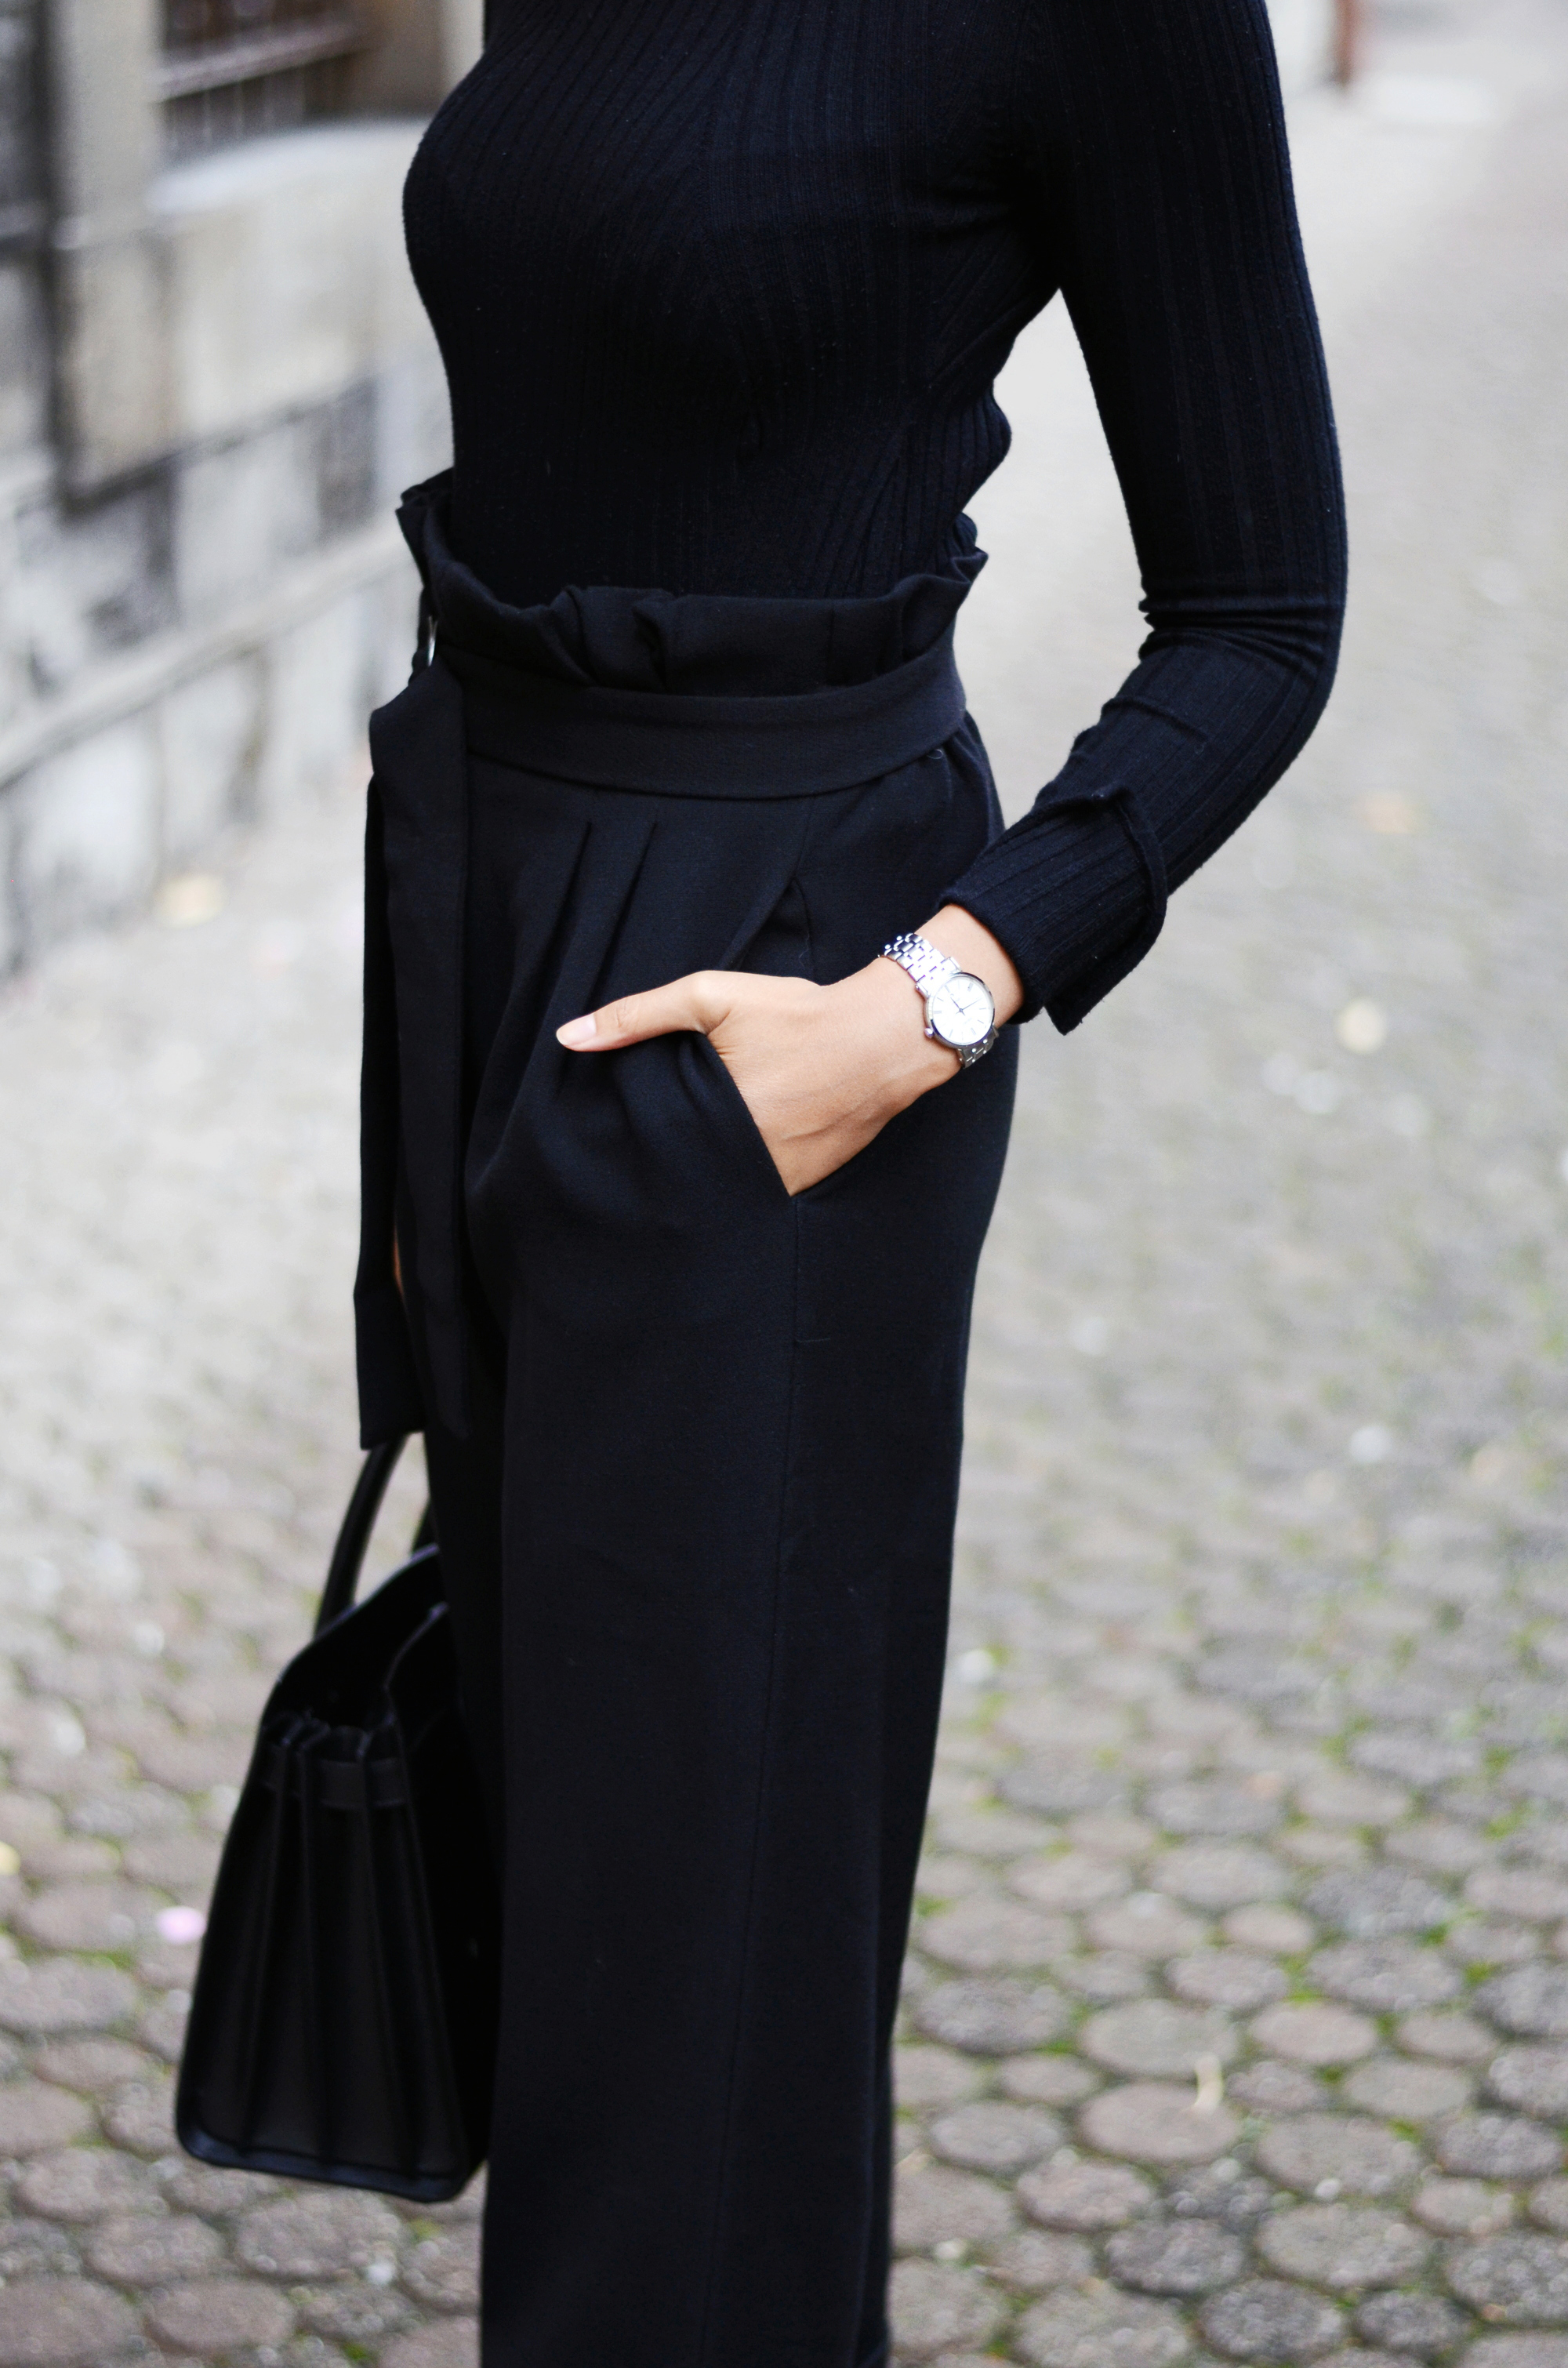 mercredie-blog-mode-geneve-suisse-fashion-blogger-all-black-outfit-chic-saint-laurent-sac-de-jour-black-matte-seiko-ultra-thin-ladies-quartz-sxb429p1-look